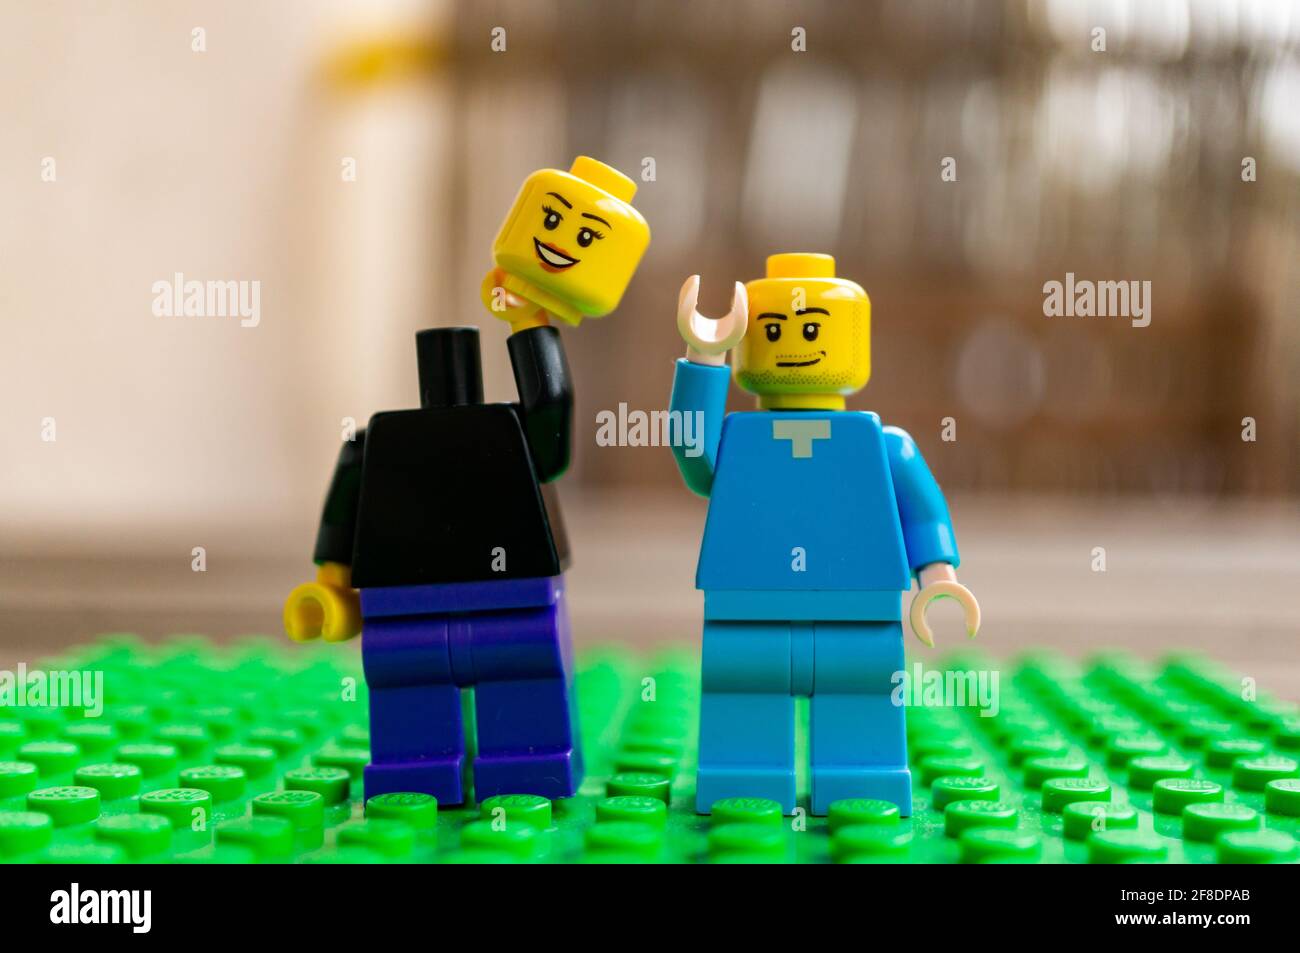 POZNAN, POLONIA - 27 marzo 2021: Due statuette giocattolo Lego in piedi su una superficie verde. Uno sta tenendo la testa mancante. Foto Stock